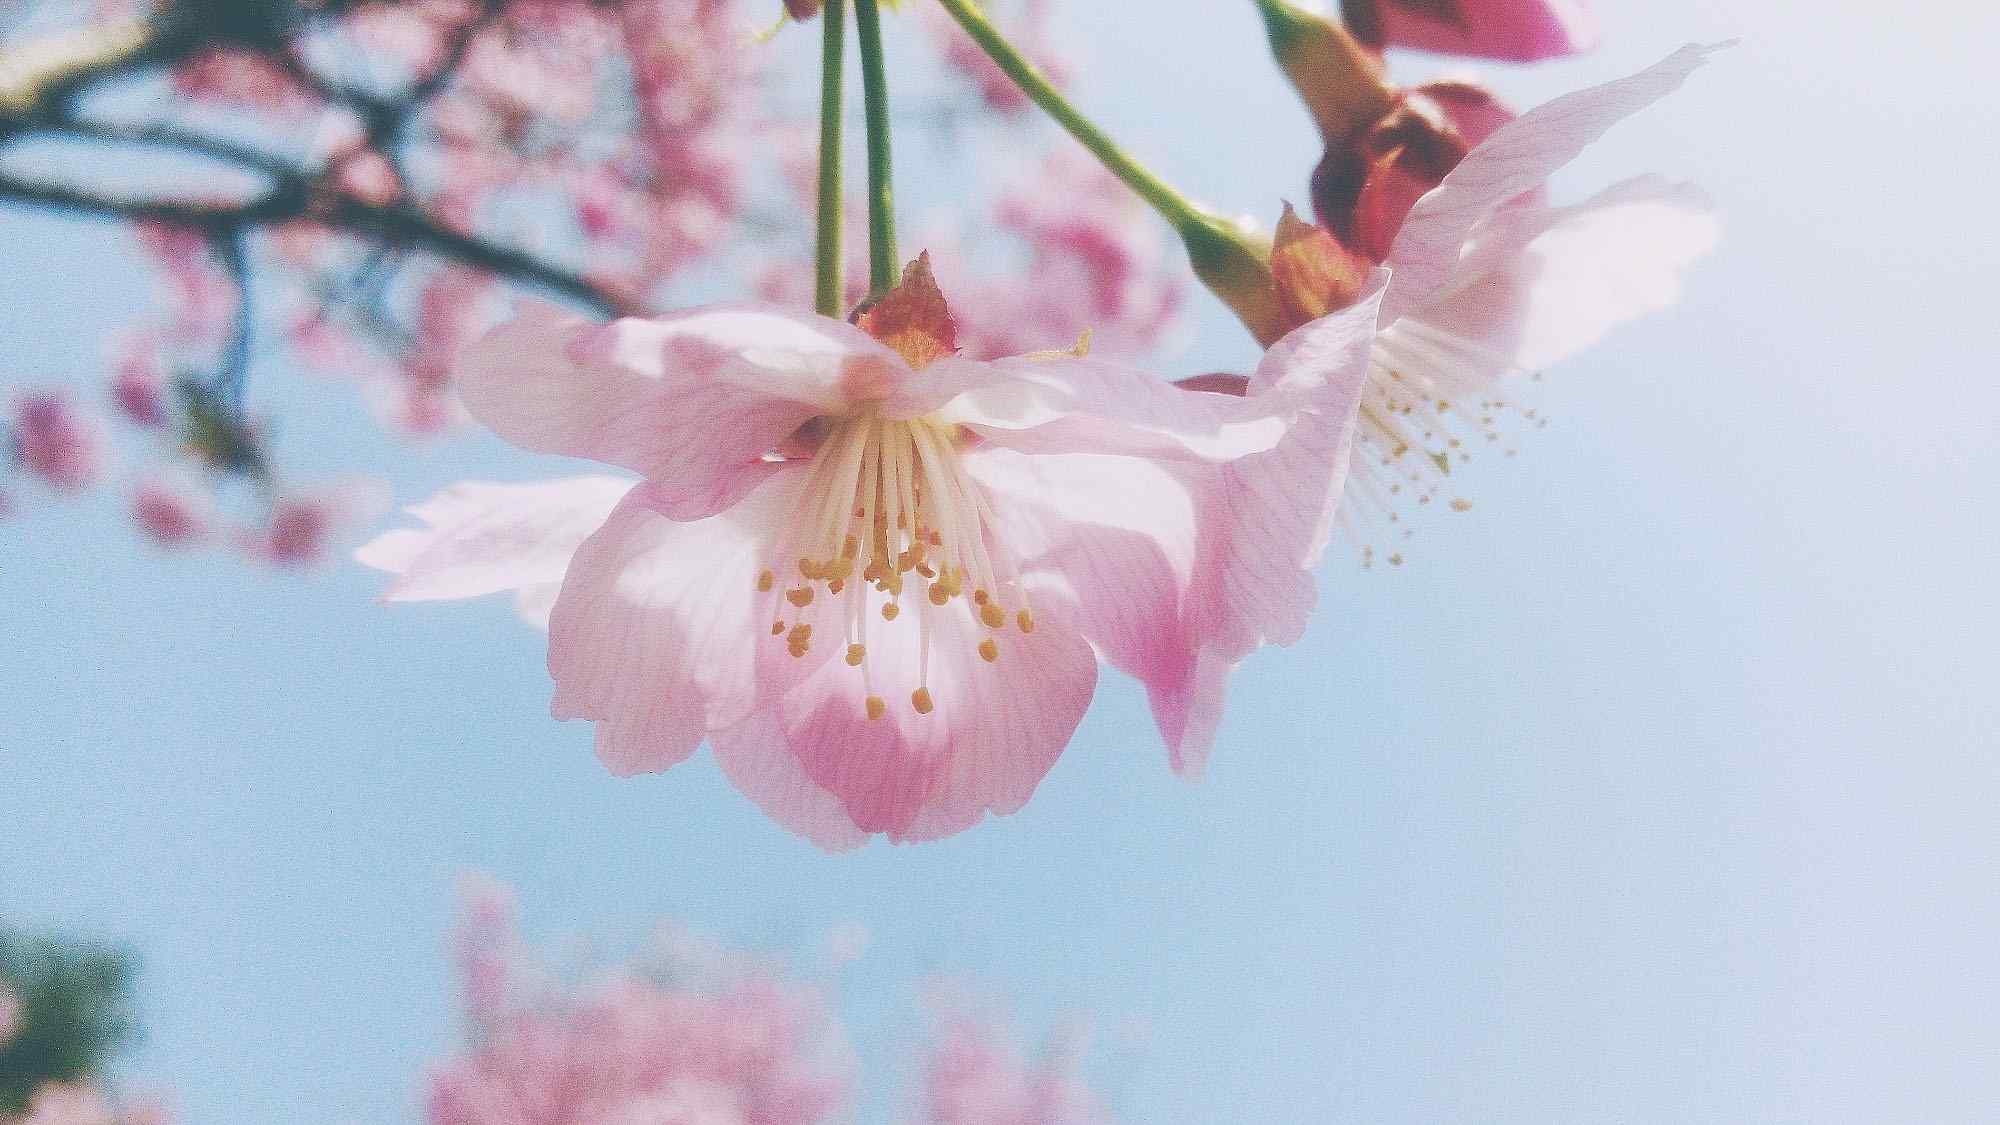 一朵盛开的粉色花朵唯美图片桌面壁纸